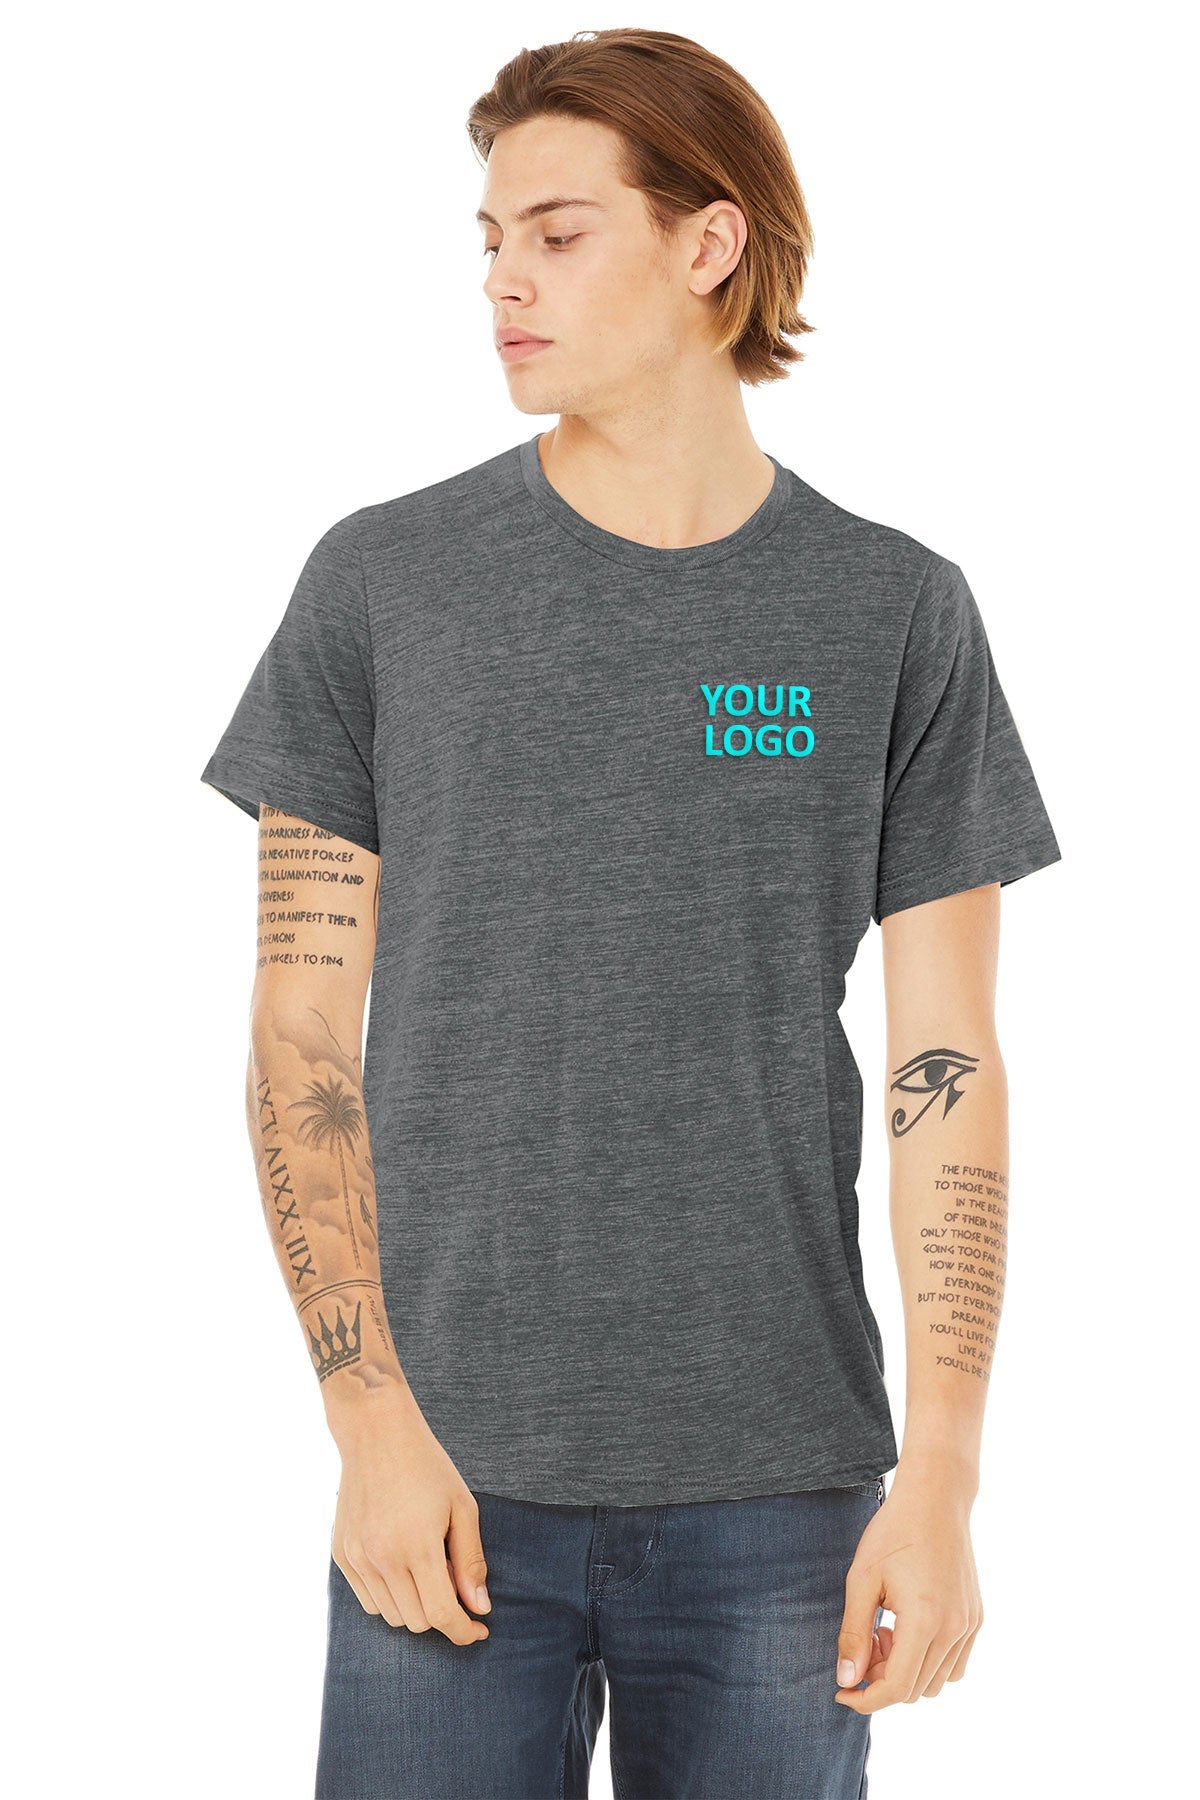 bella + canvas unisex poly-cotton short sleeve t-shirt 3650 asphalt slub